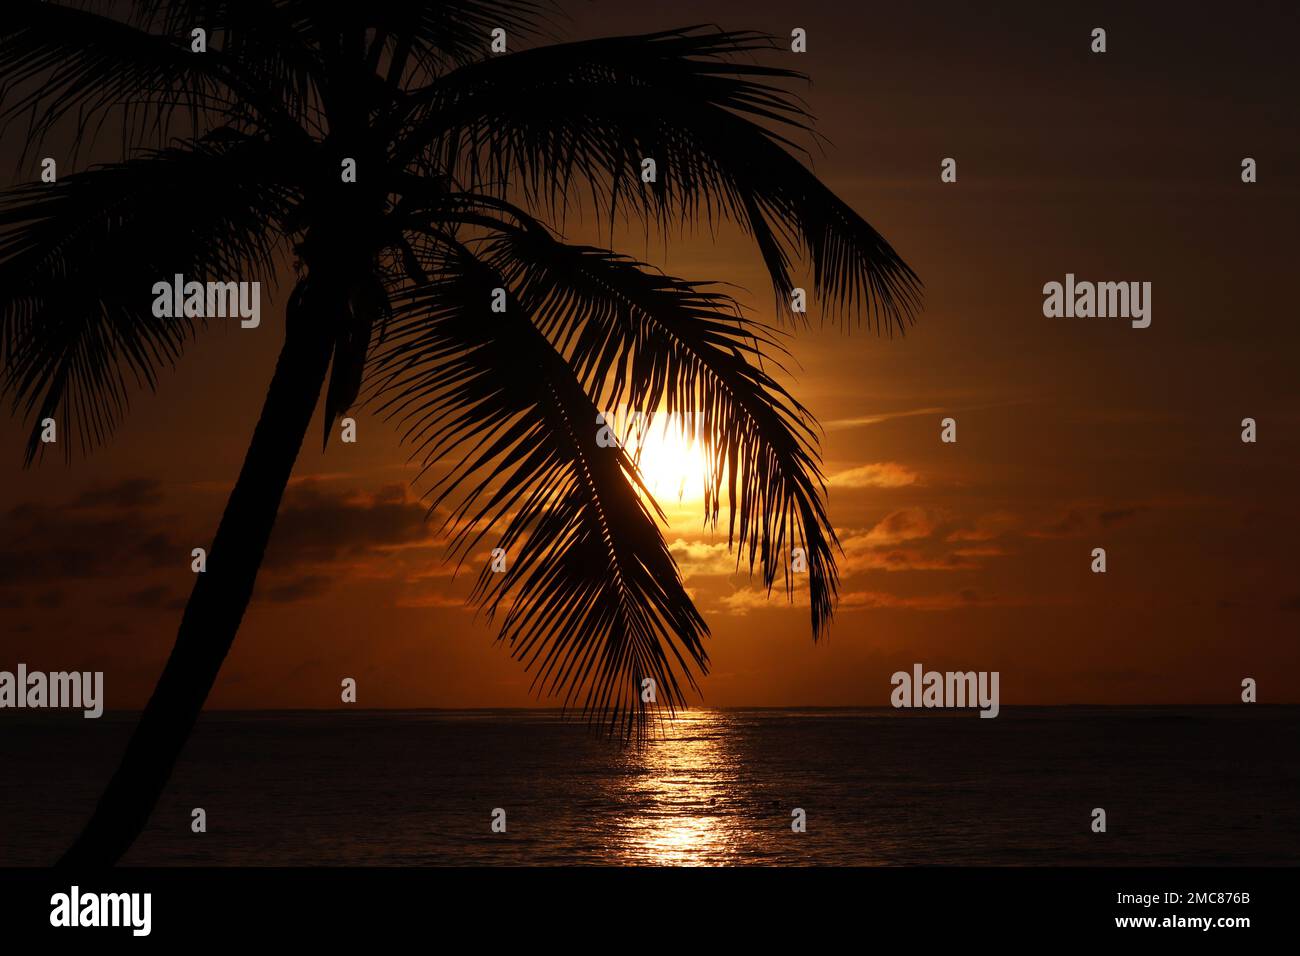 Silhouette de cocotier sur fond de ciel de mer et de coucher de soleil.Plage tropicale, le soleil brille à travers les feuilles de palmier, la nature paradisiaque Banque D'Images